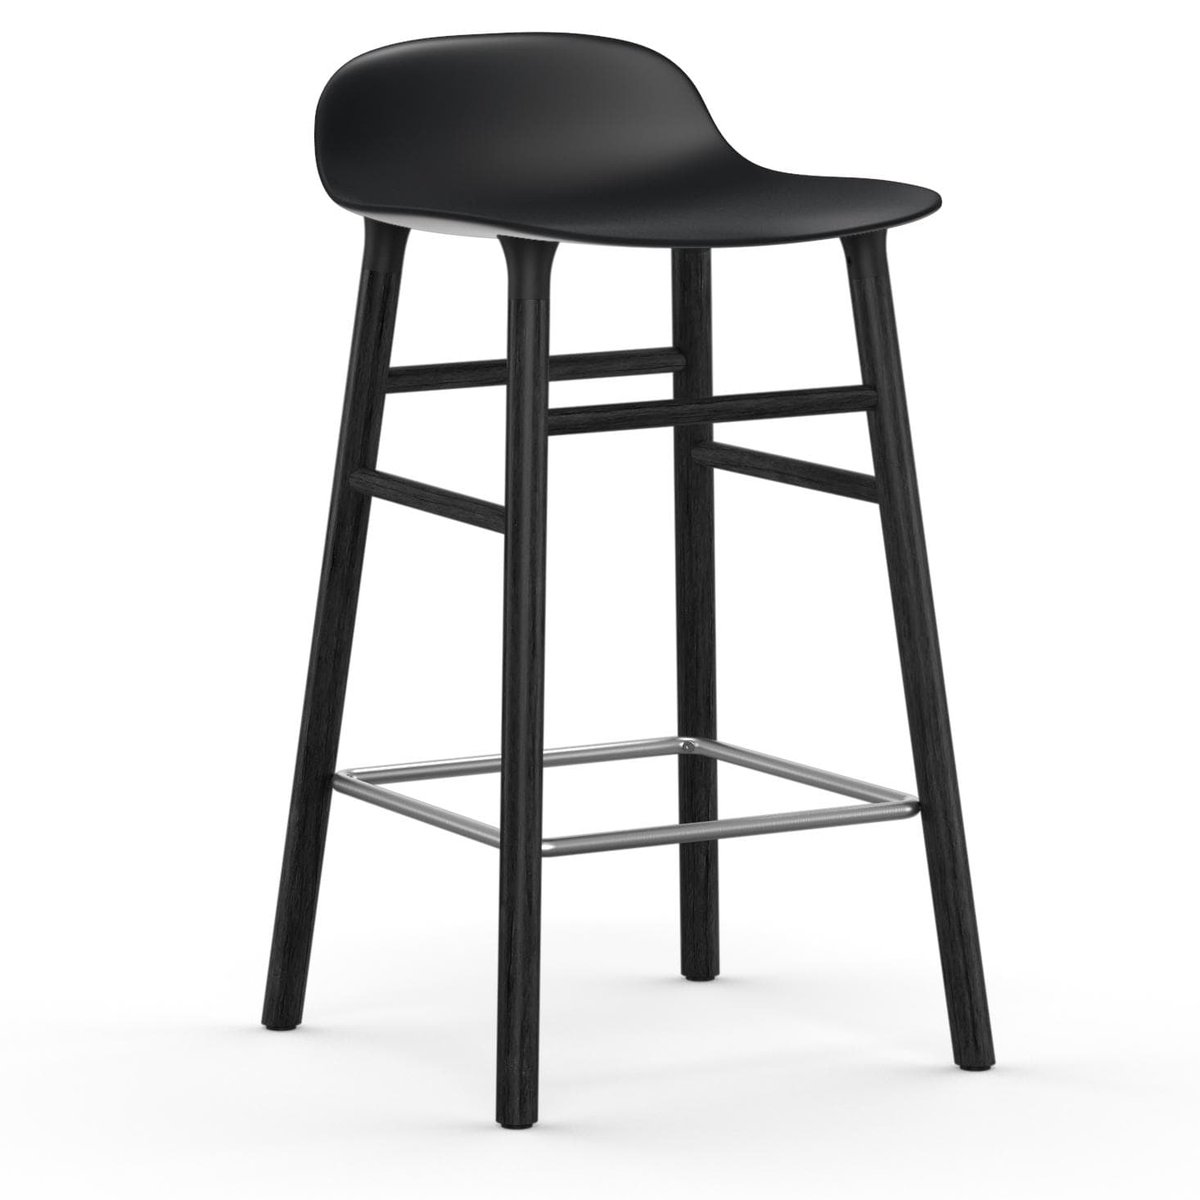 Bilde av Normann Copenhagen Form Chair barstol lakkerte eikebein 65 cm svart